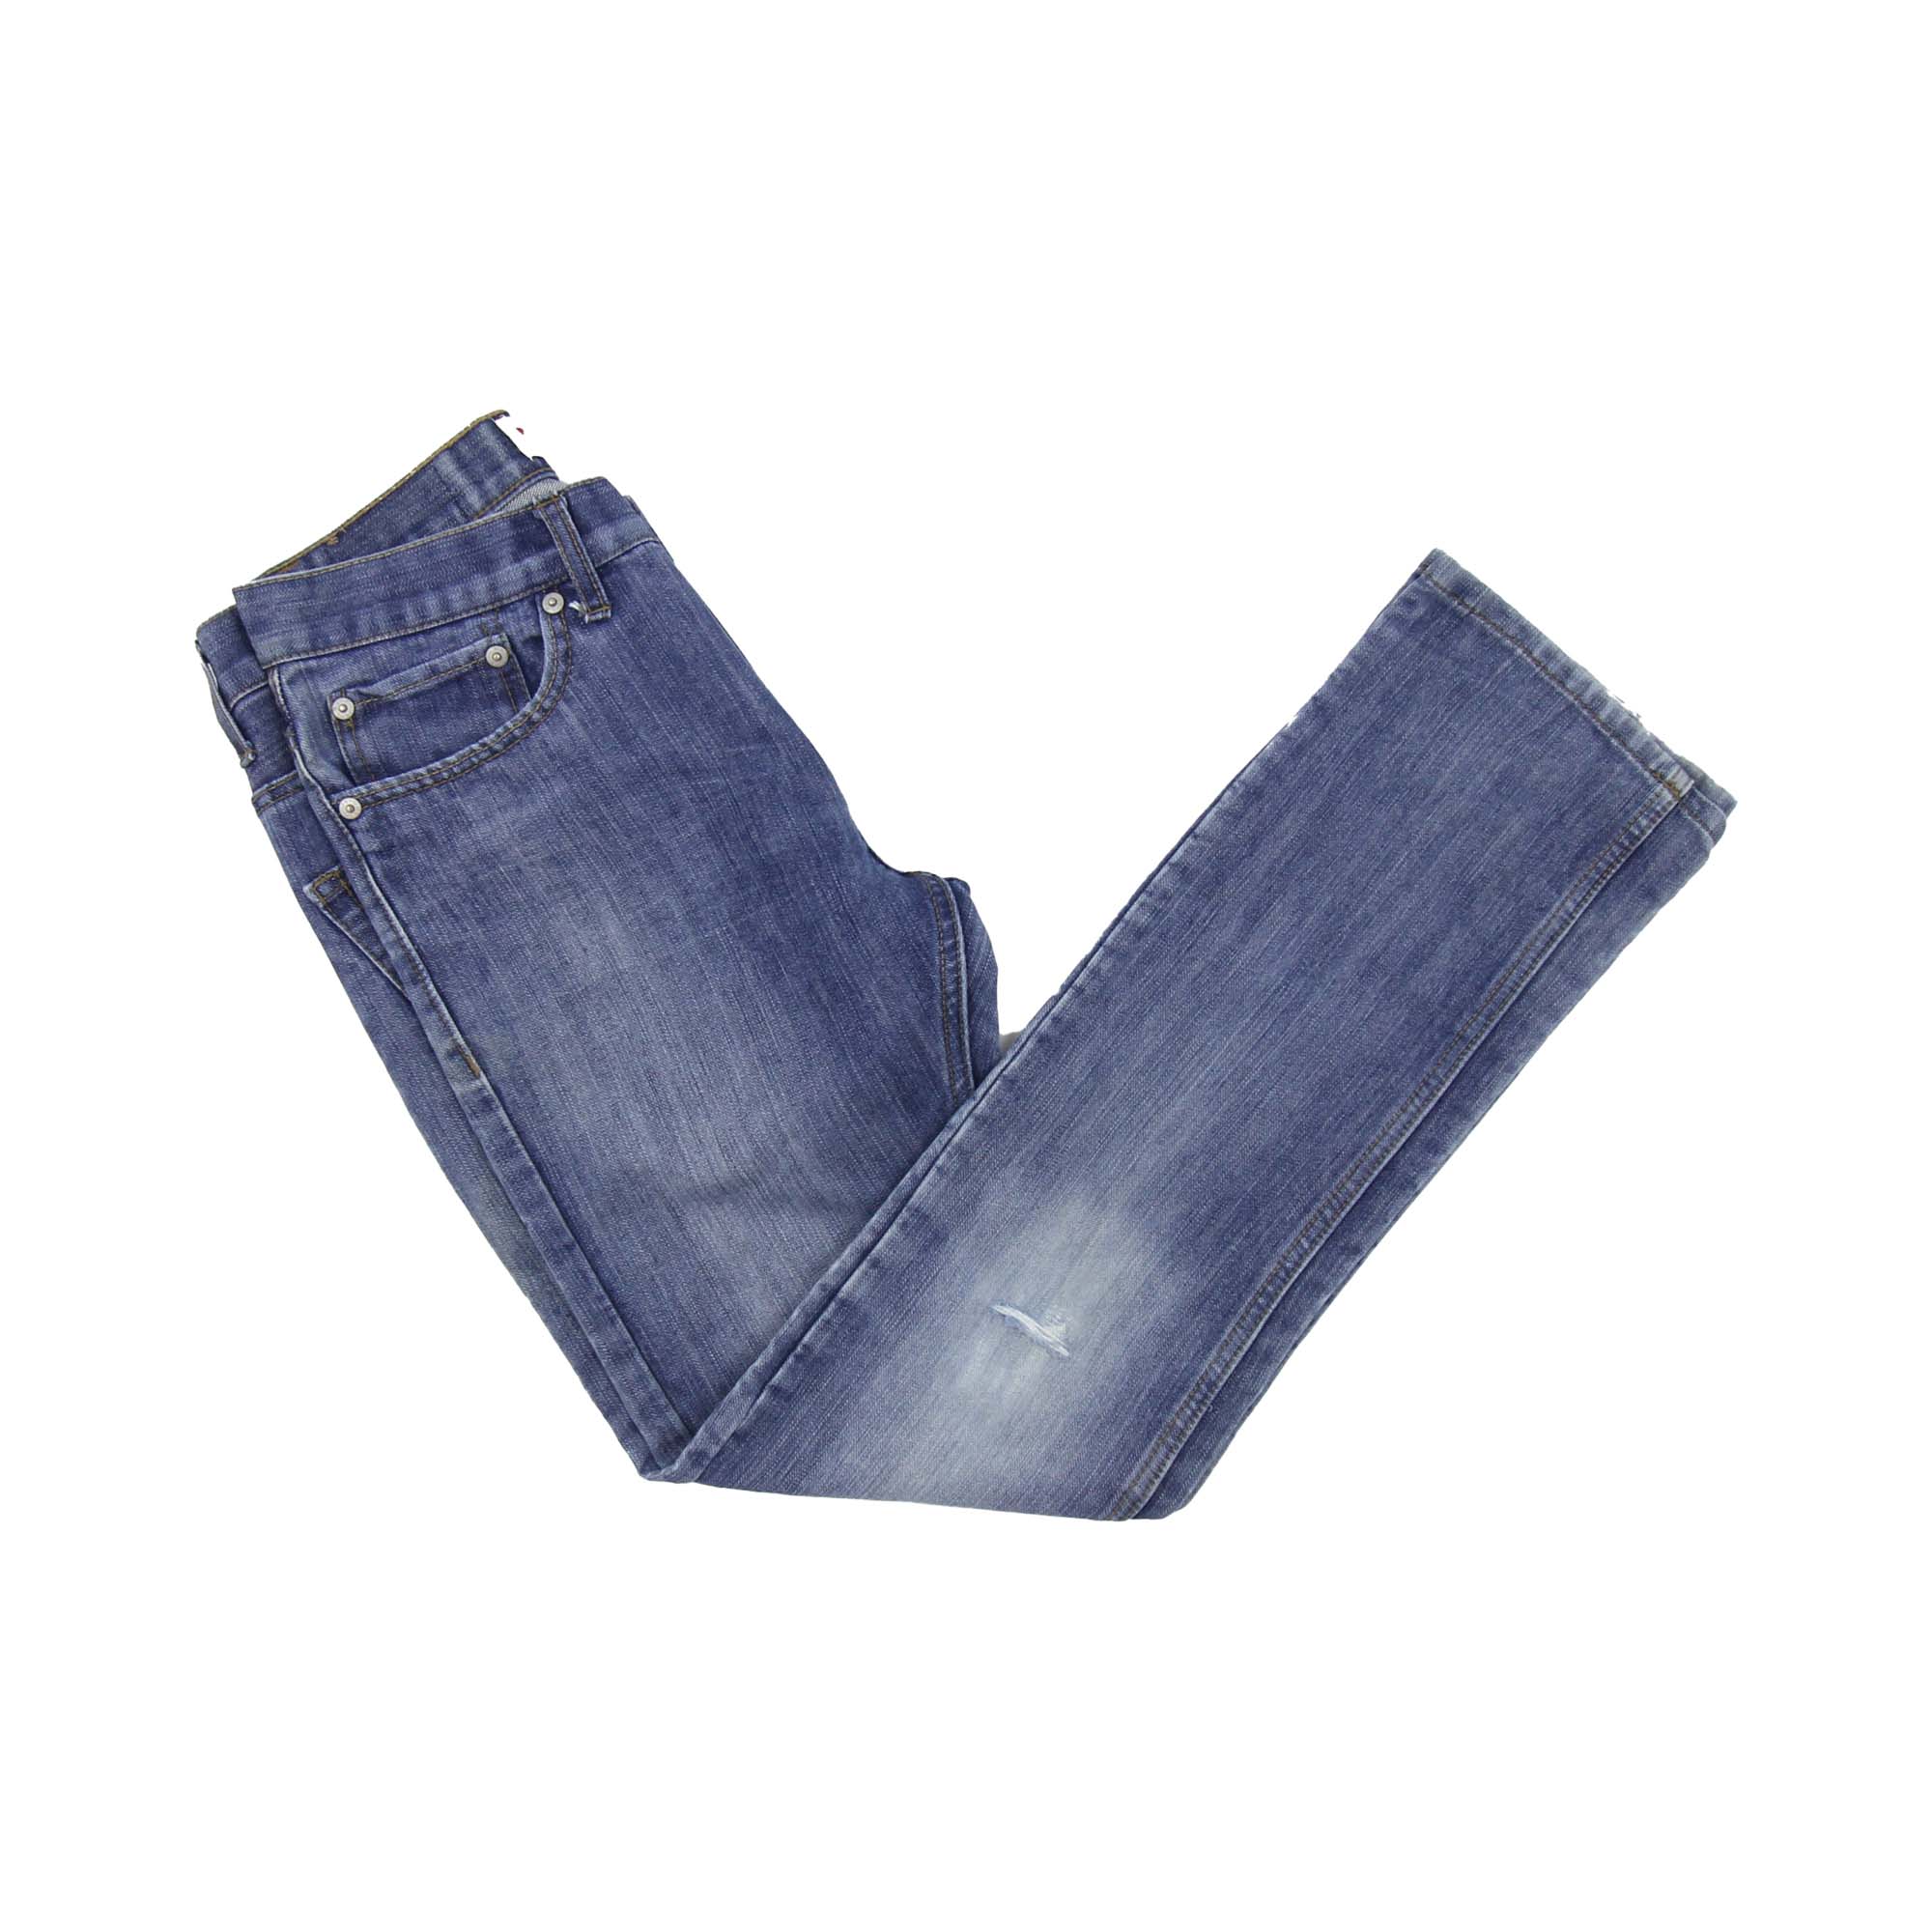 Levi's 511 Slim Jeans  -   W28 L28